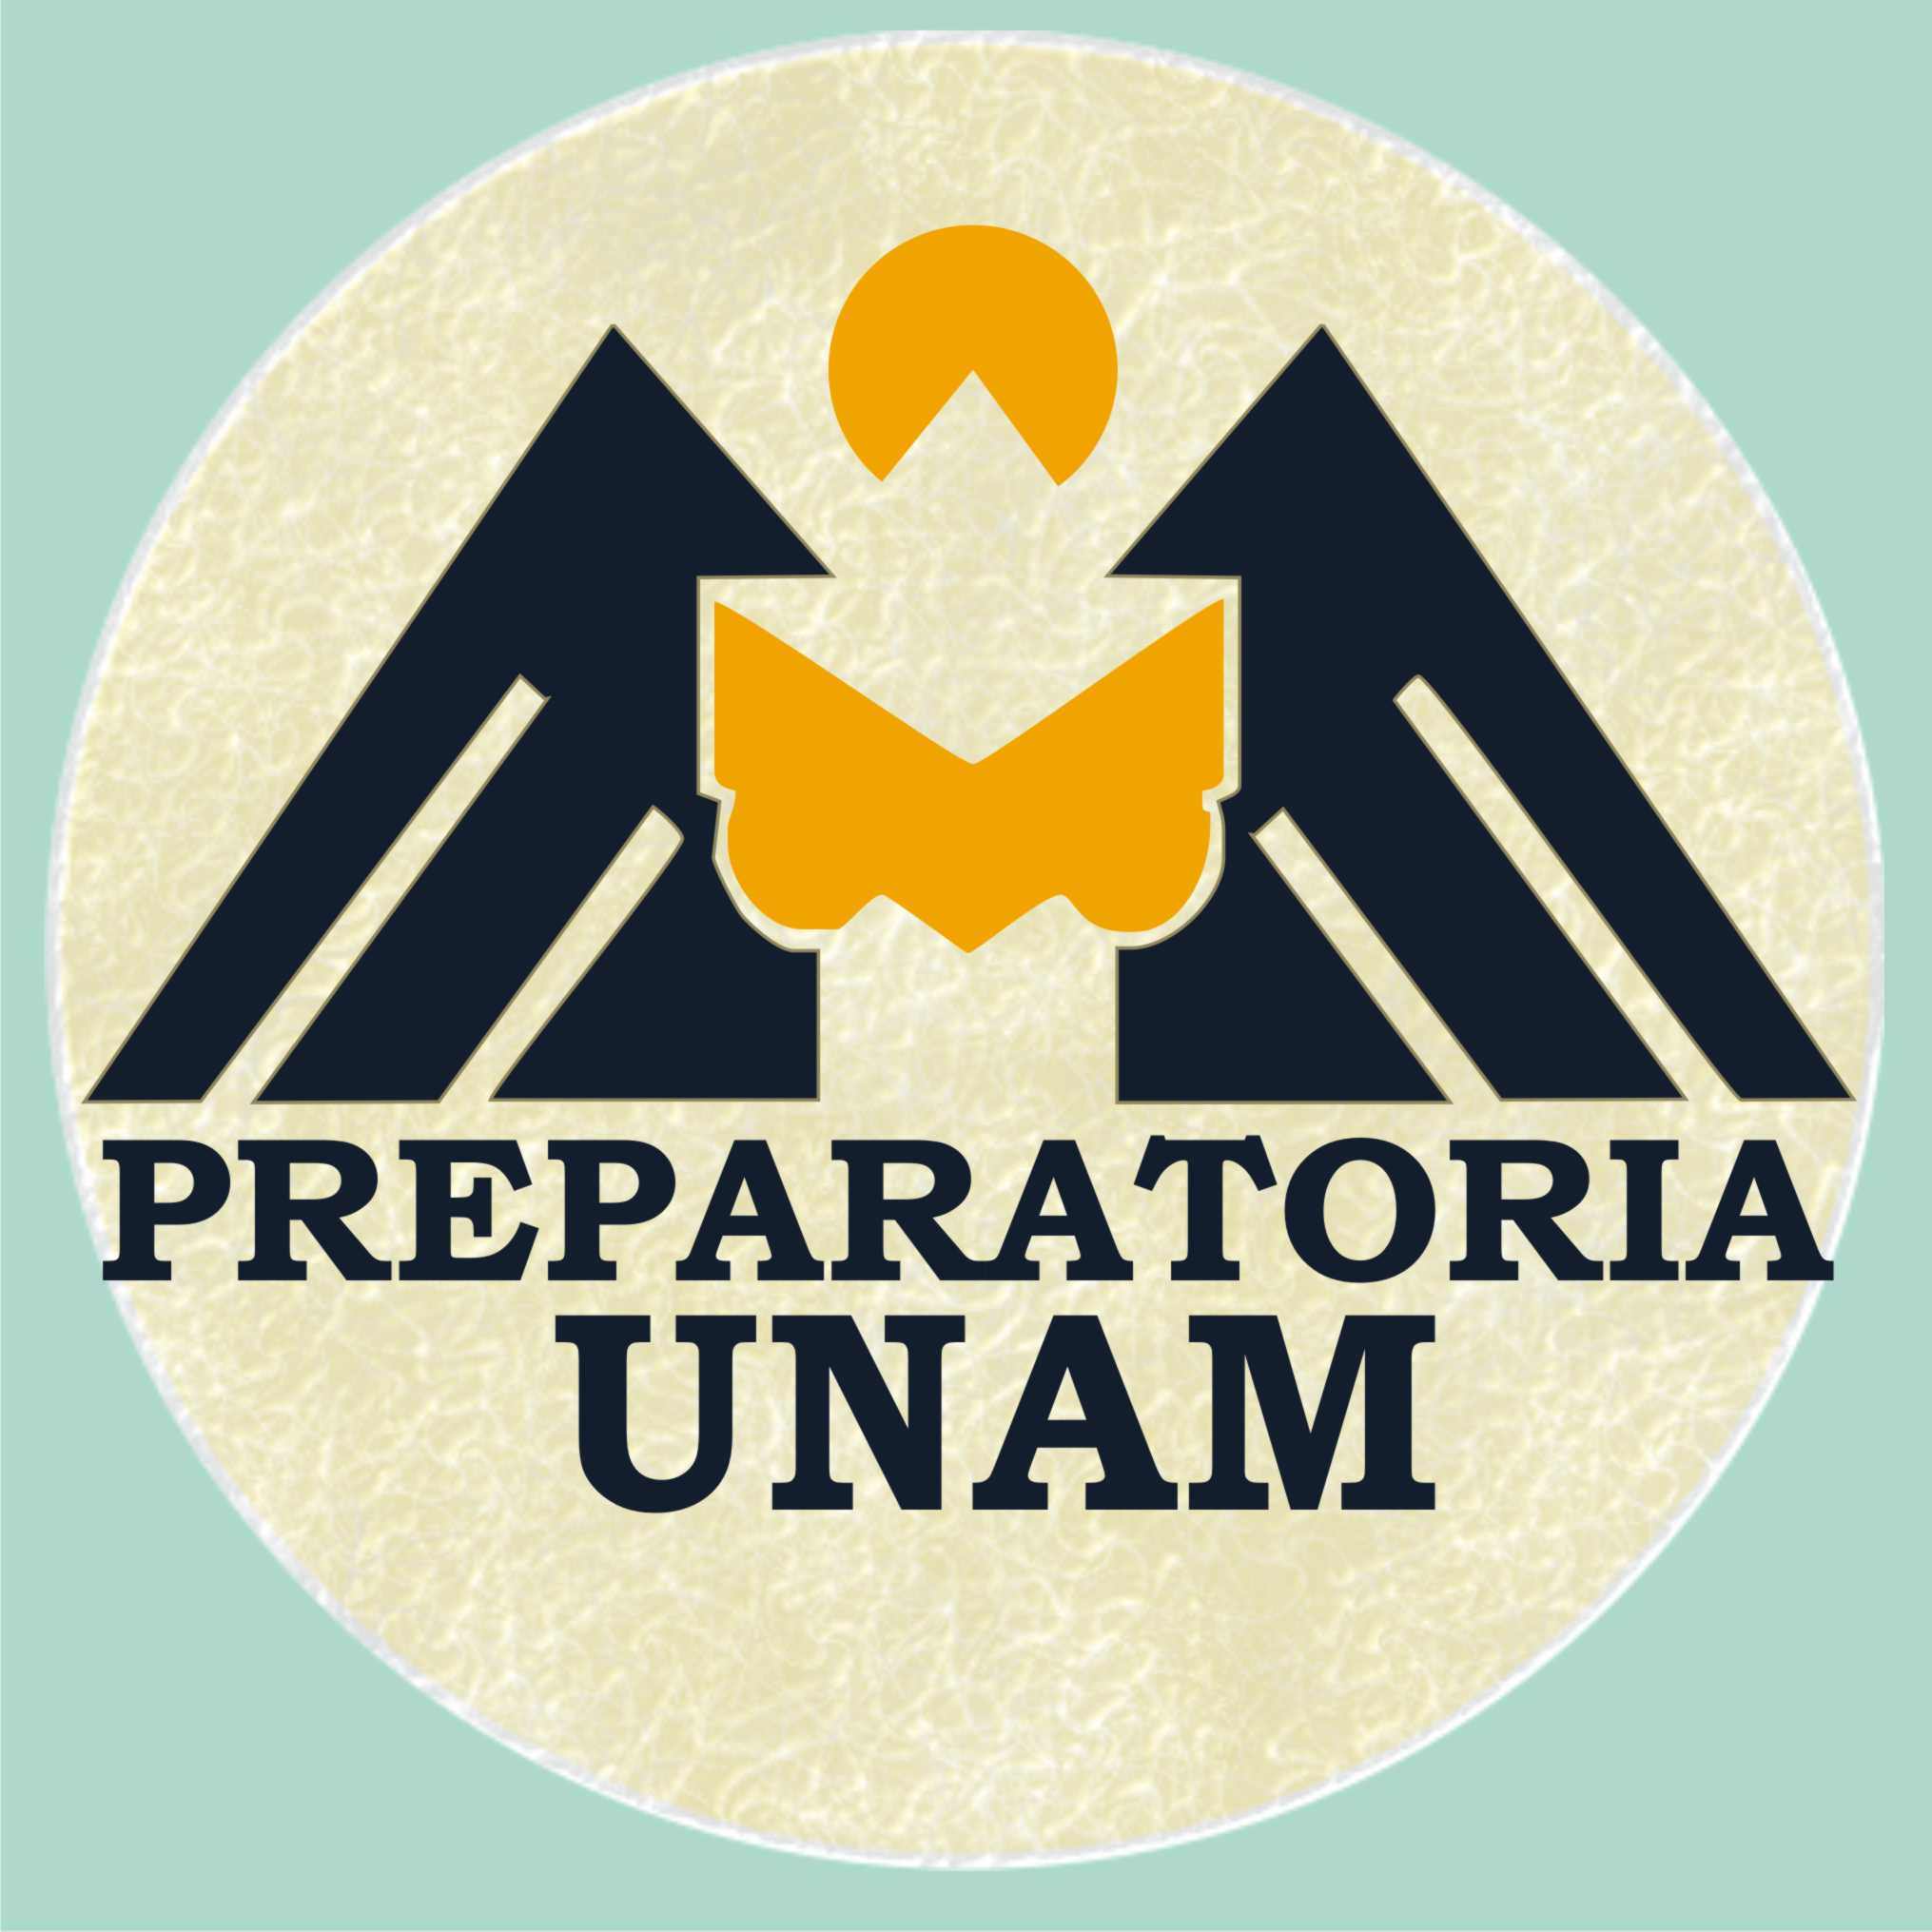 PREPARATORIA UNAM